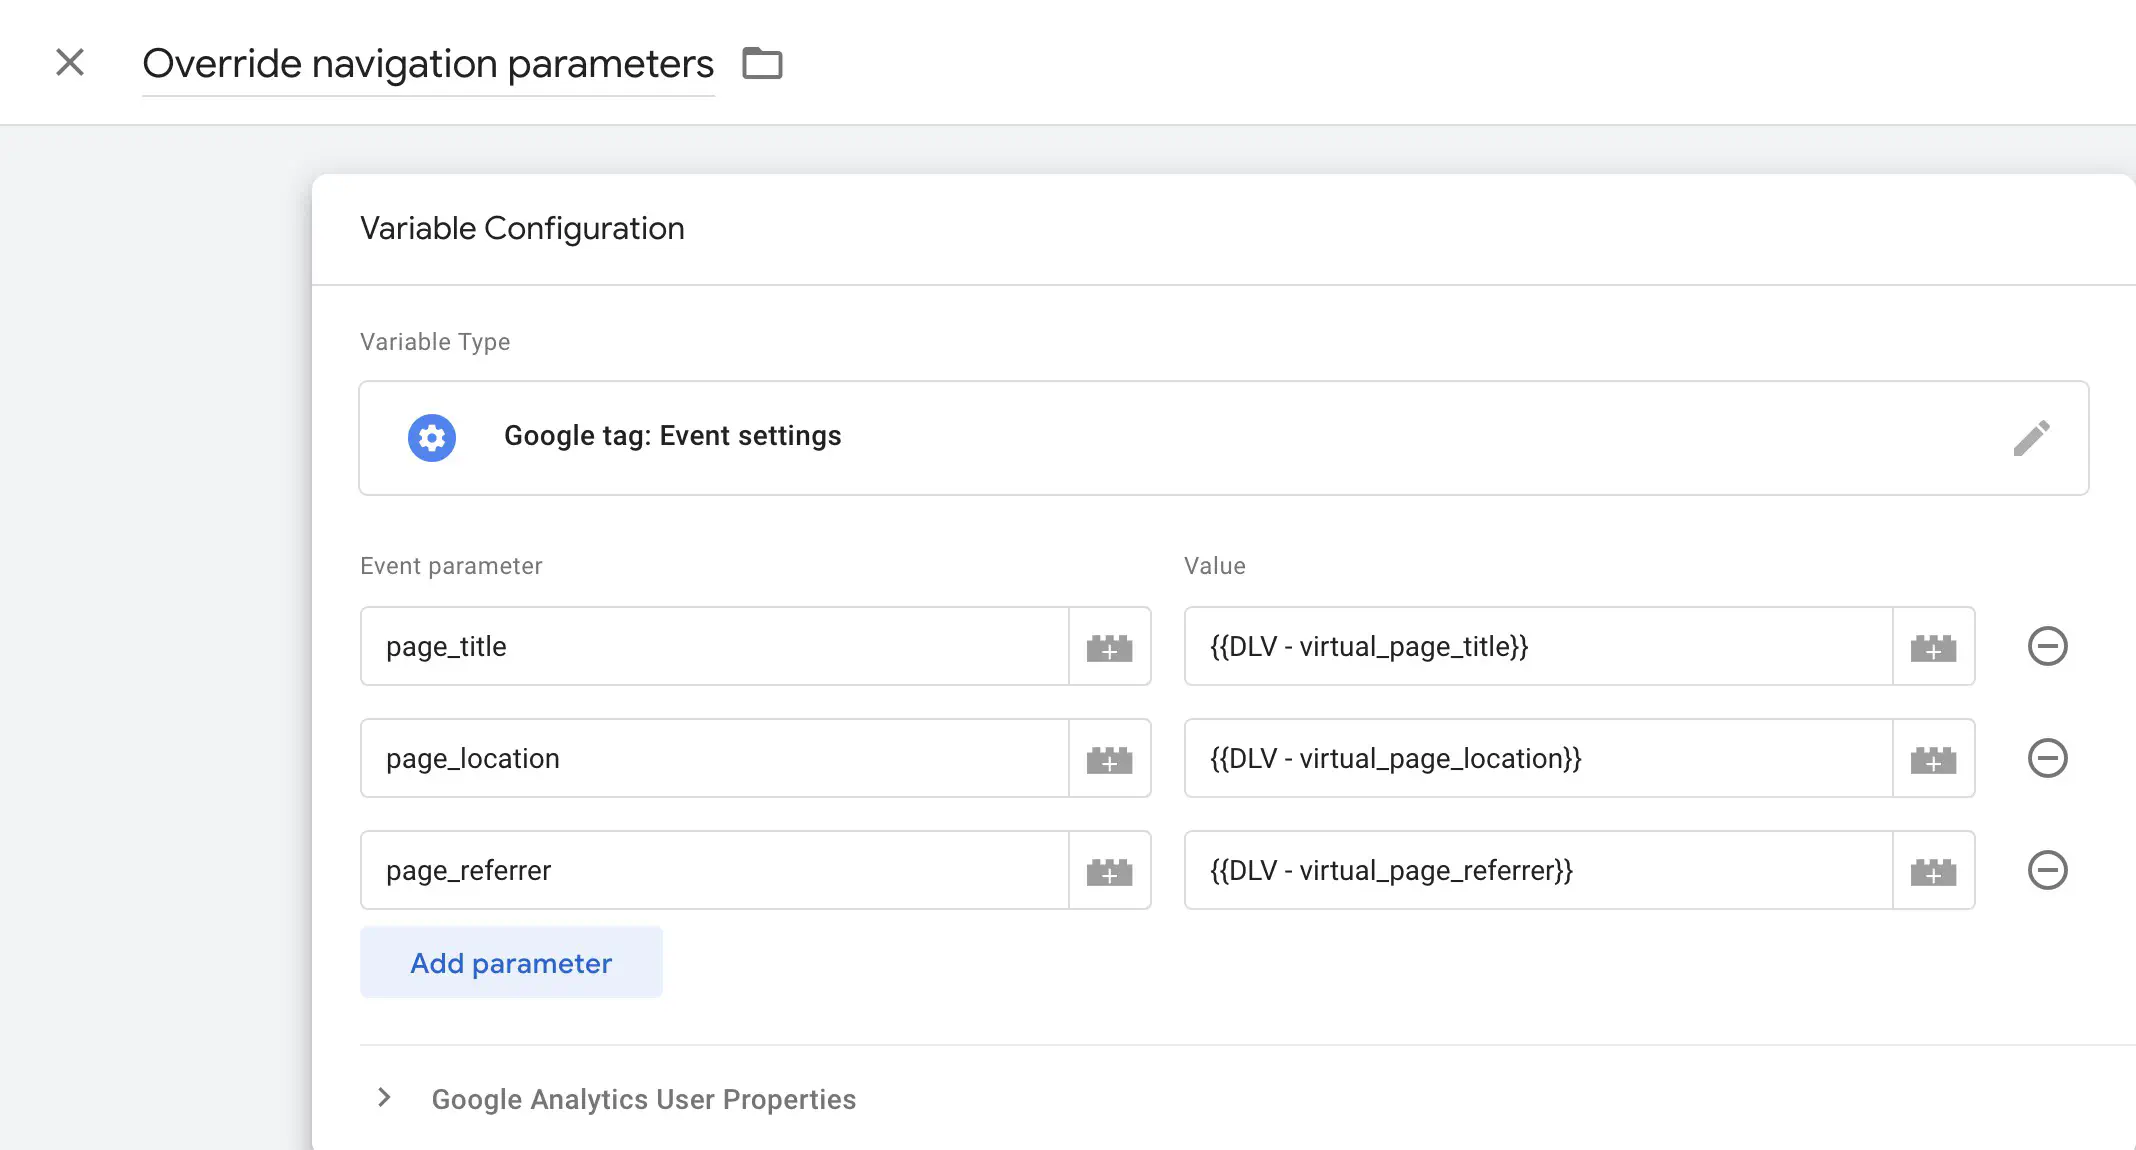 Verwenden Sie die Google tag: Event settings Variable, um die Parameter page_title, page_location und page_referrer auszufüllen.